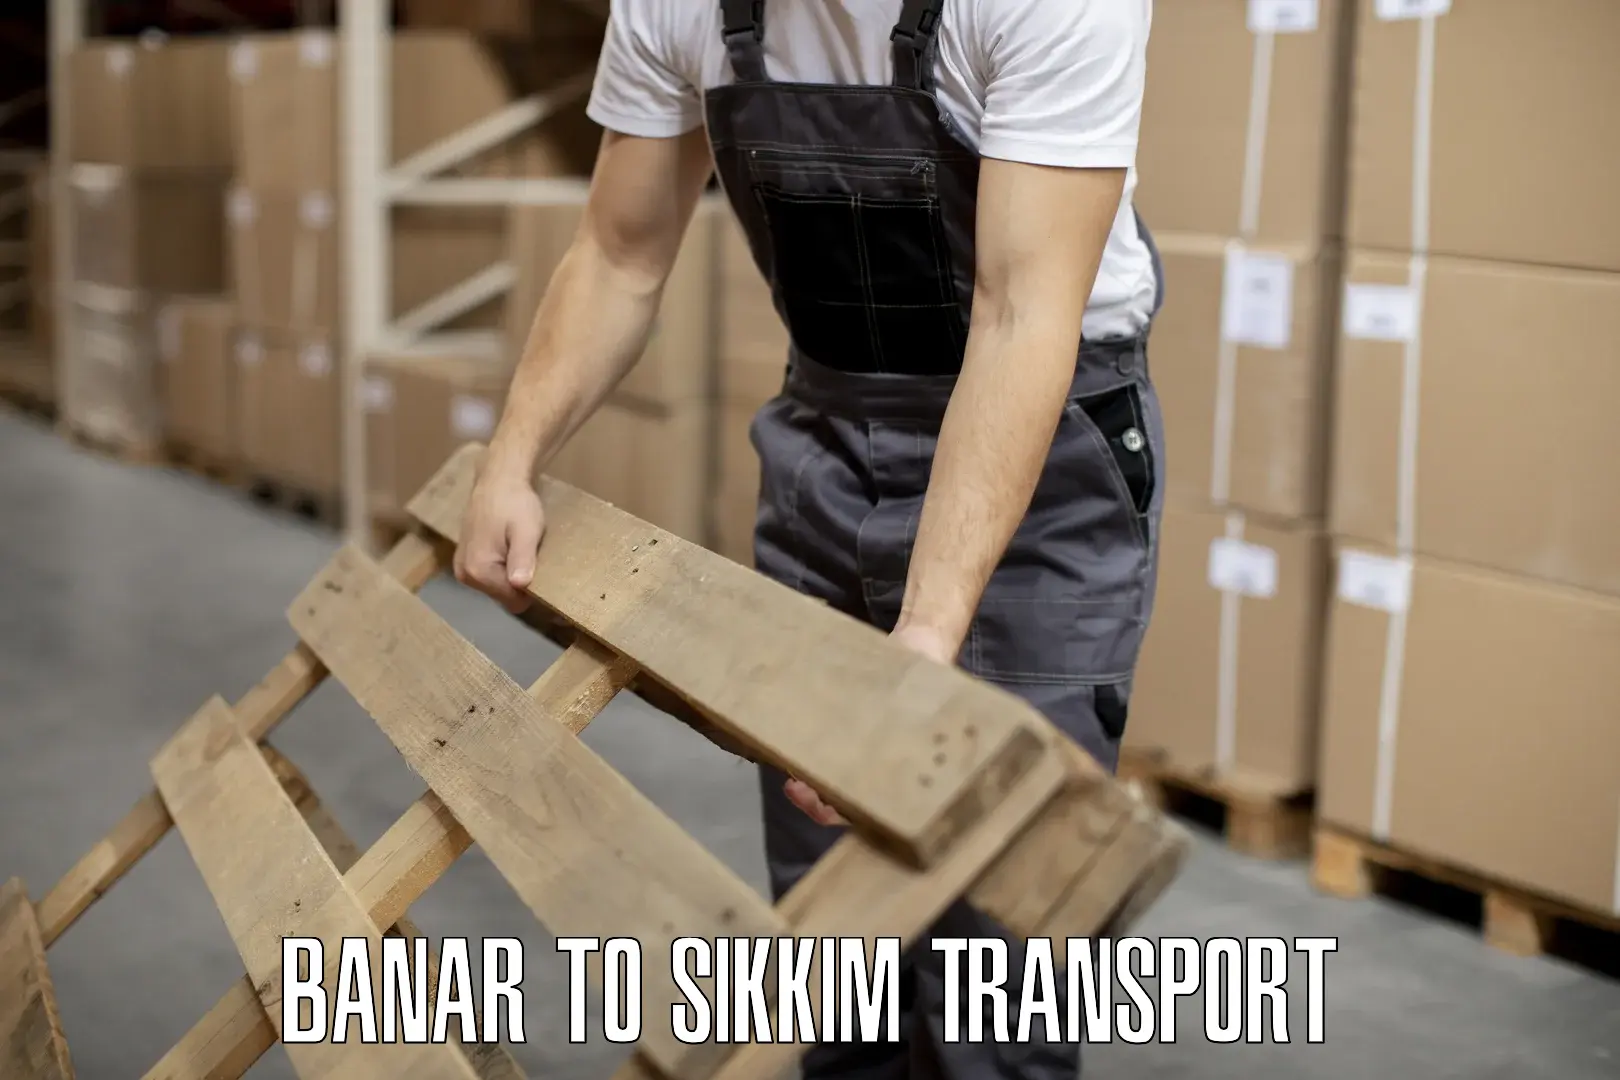 Lorry transport service Banar to Mangan